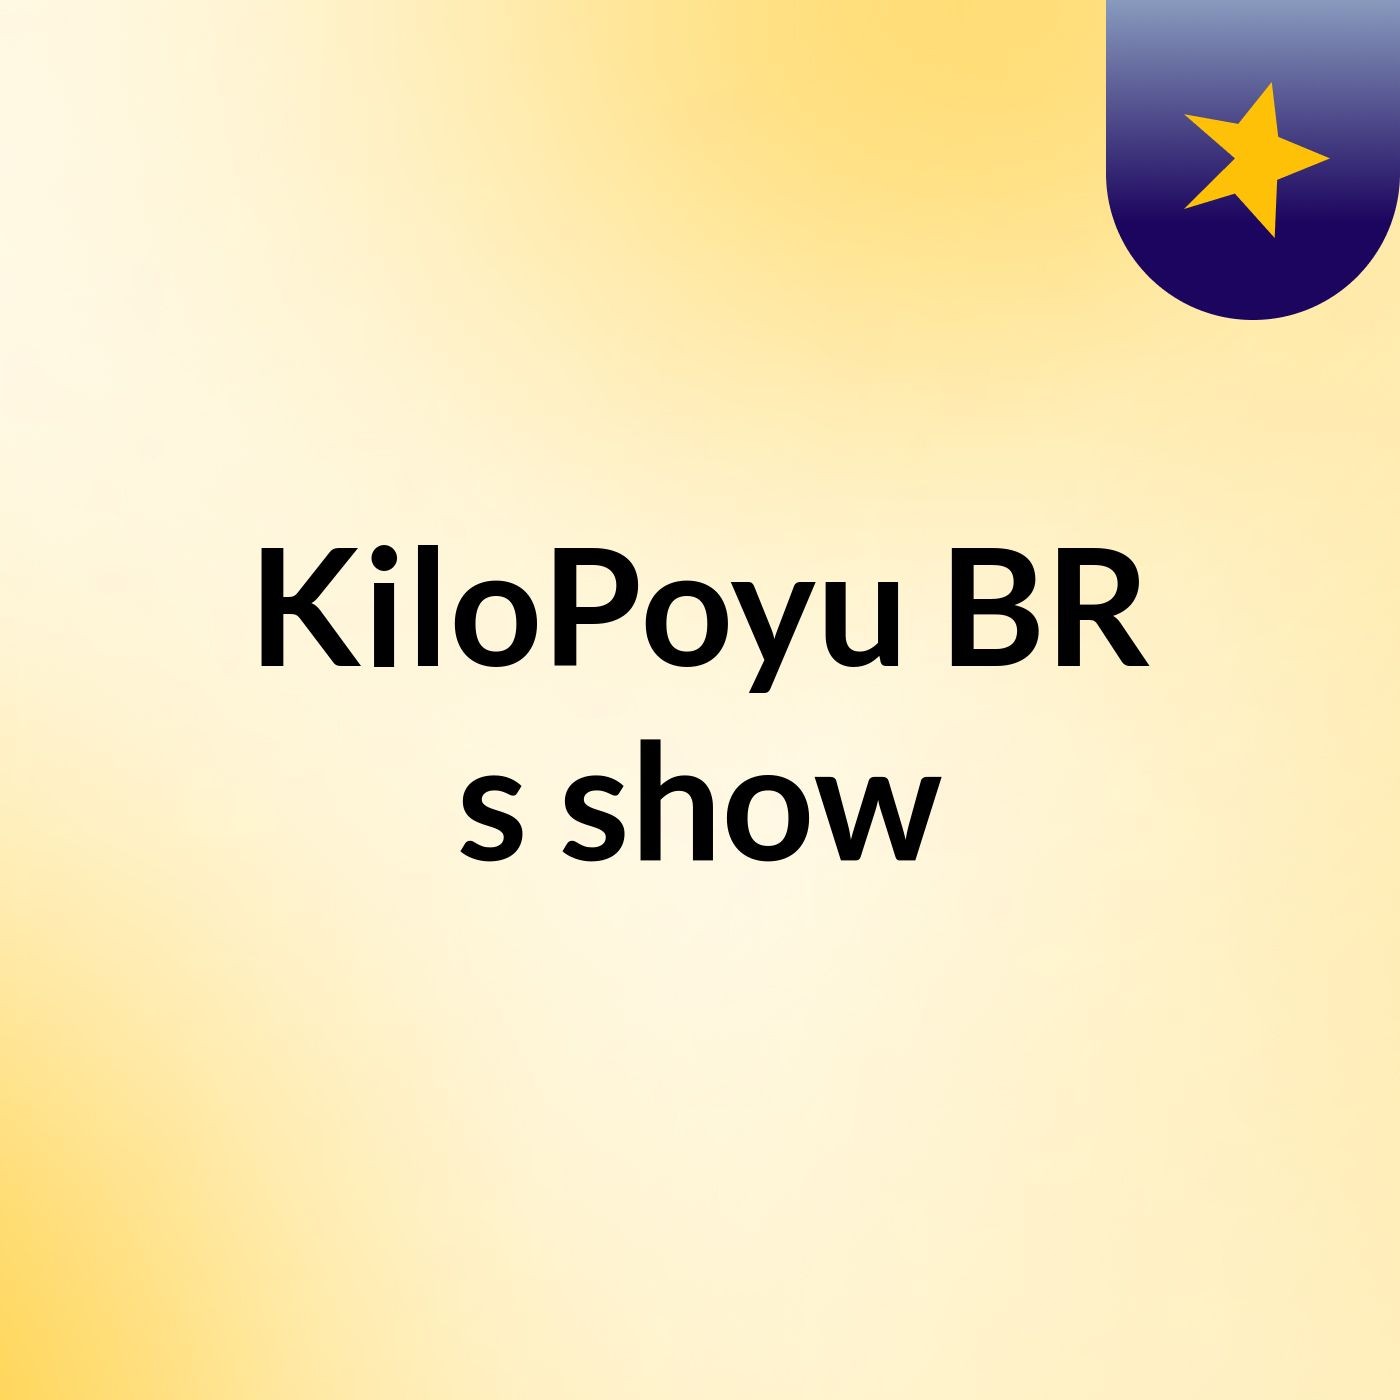 KiloPoyu BR's show